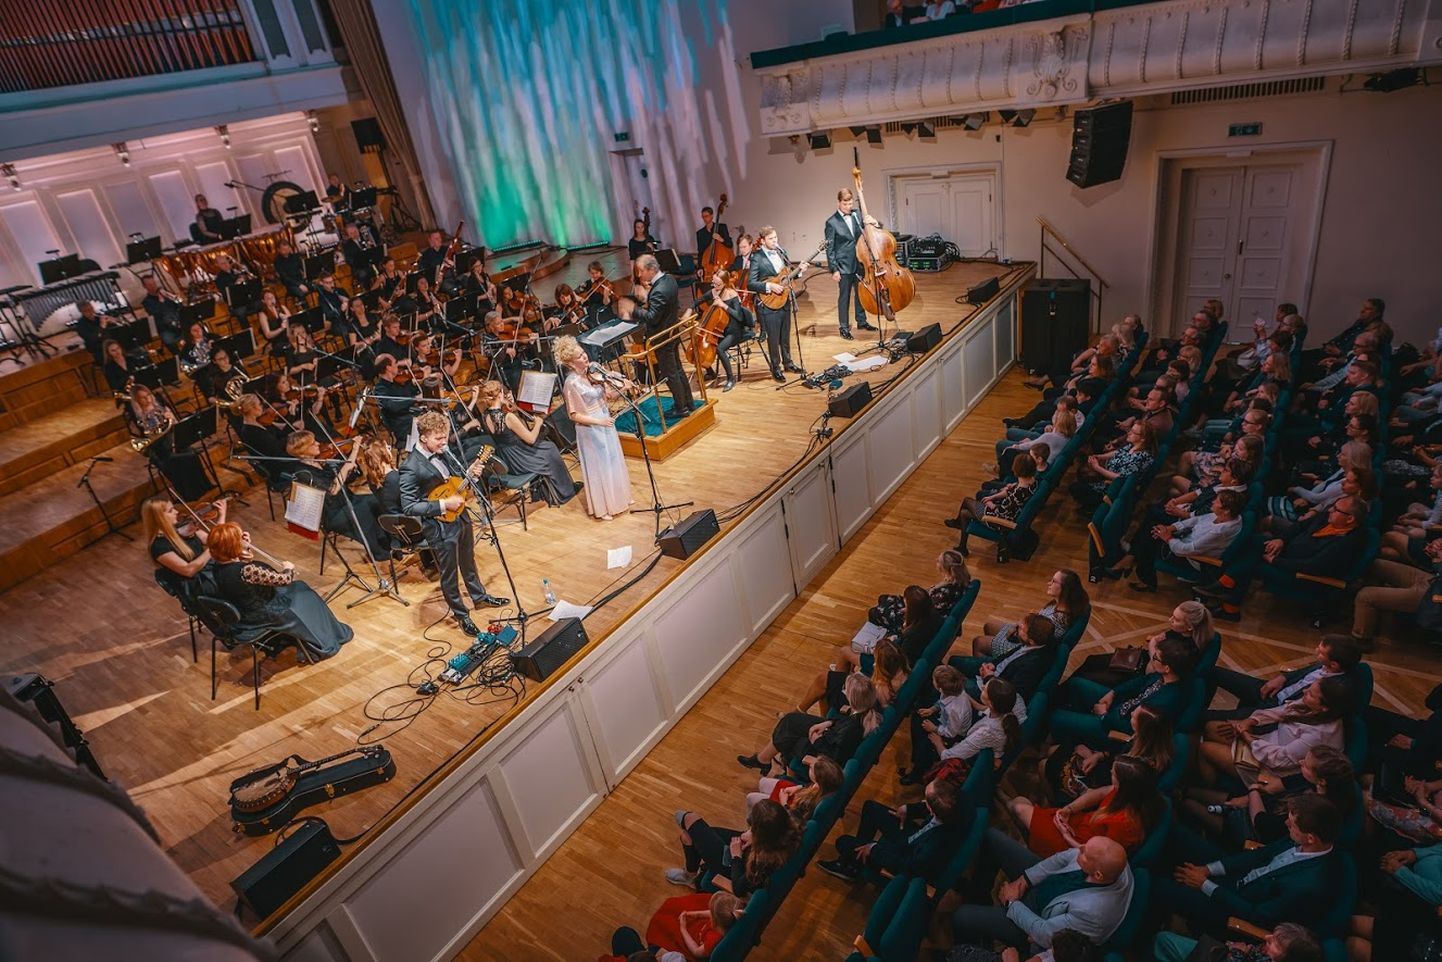 Ansambel Curly Strings andis kolmapäeval kontserdi Estonia kontserdisaalis koos sümfooniaorkestriga.